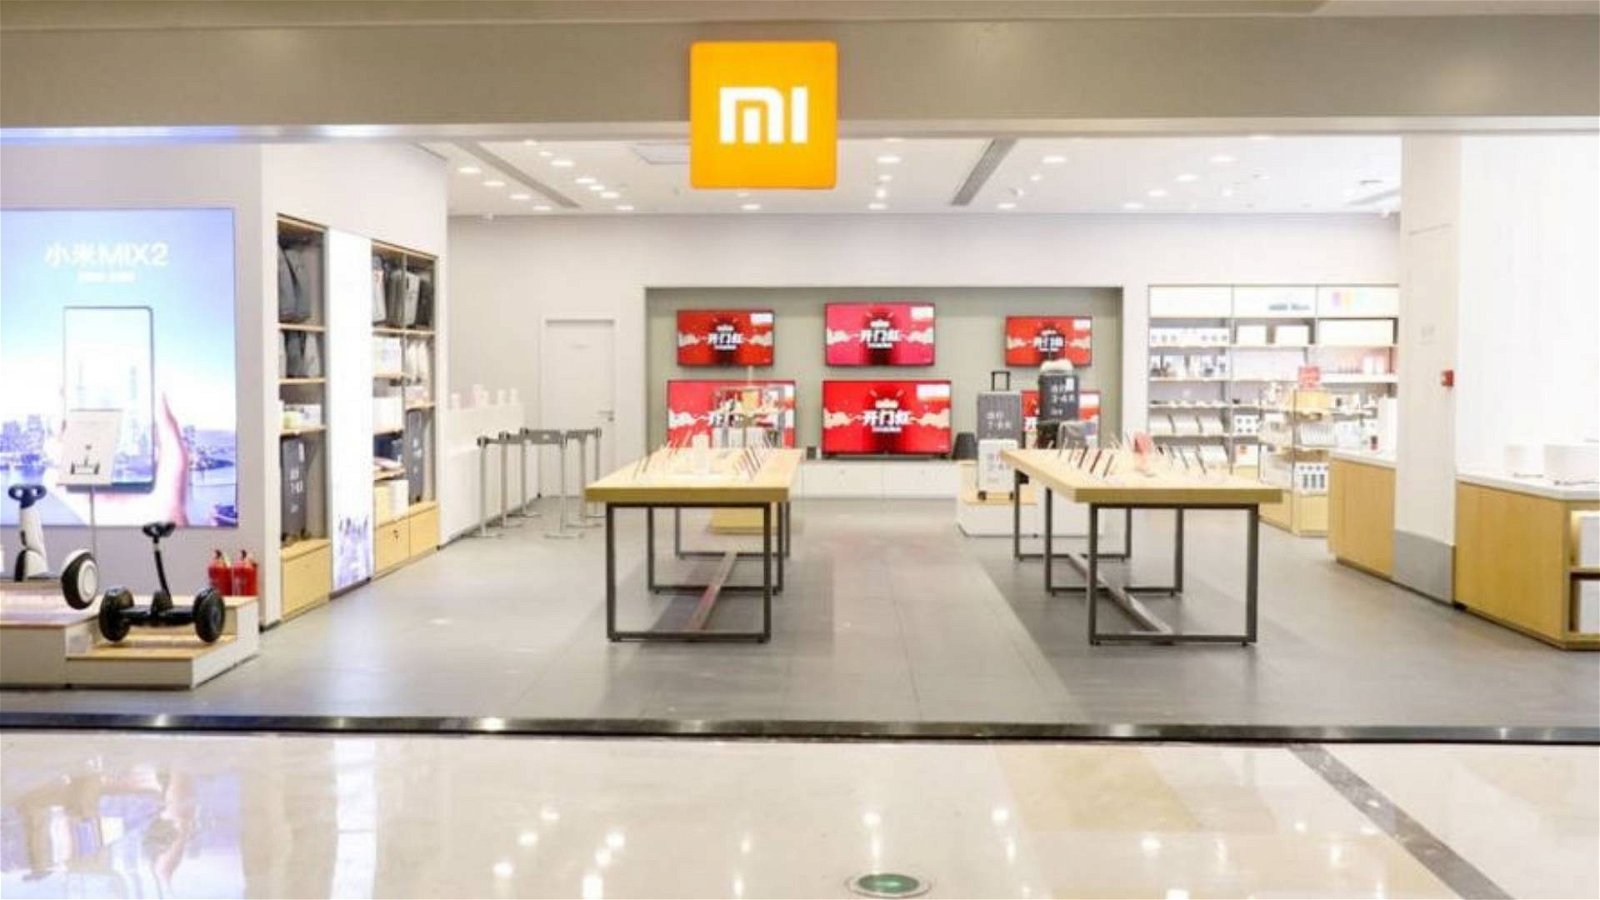 Immagine di Xiaomi inarrestabile: oggi apre il più grande Mi Store europeo a Parigi